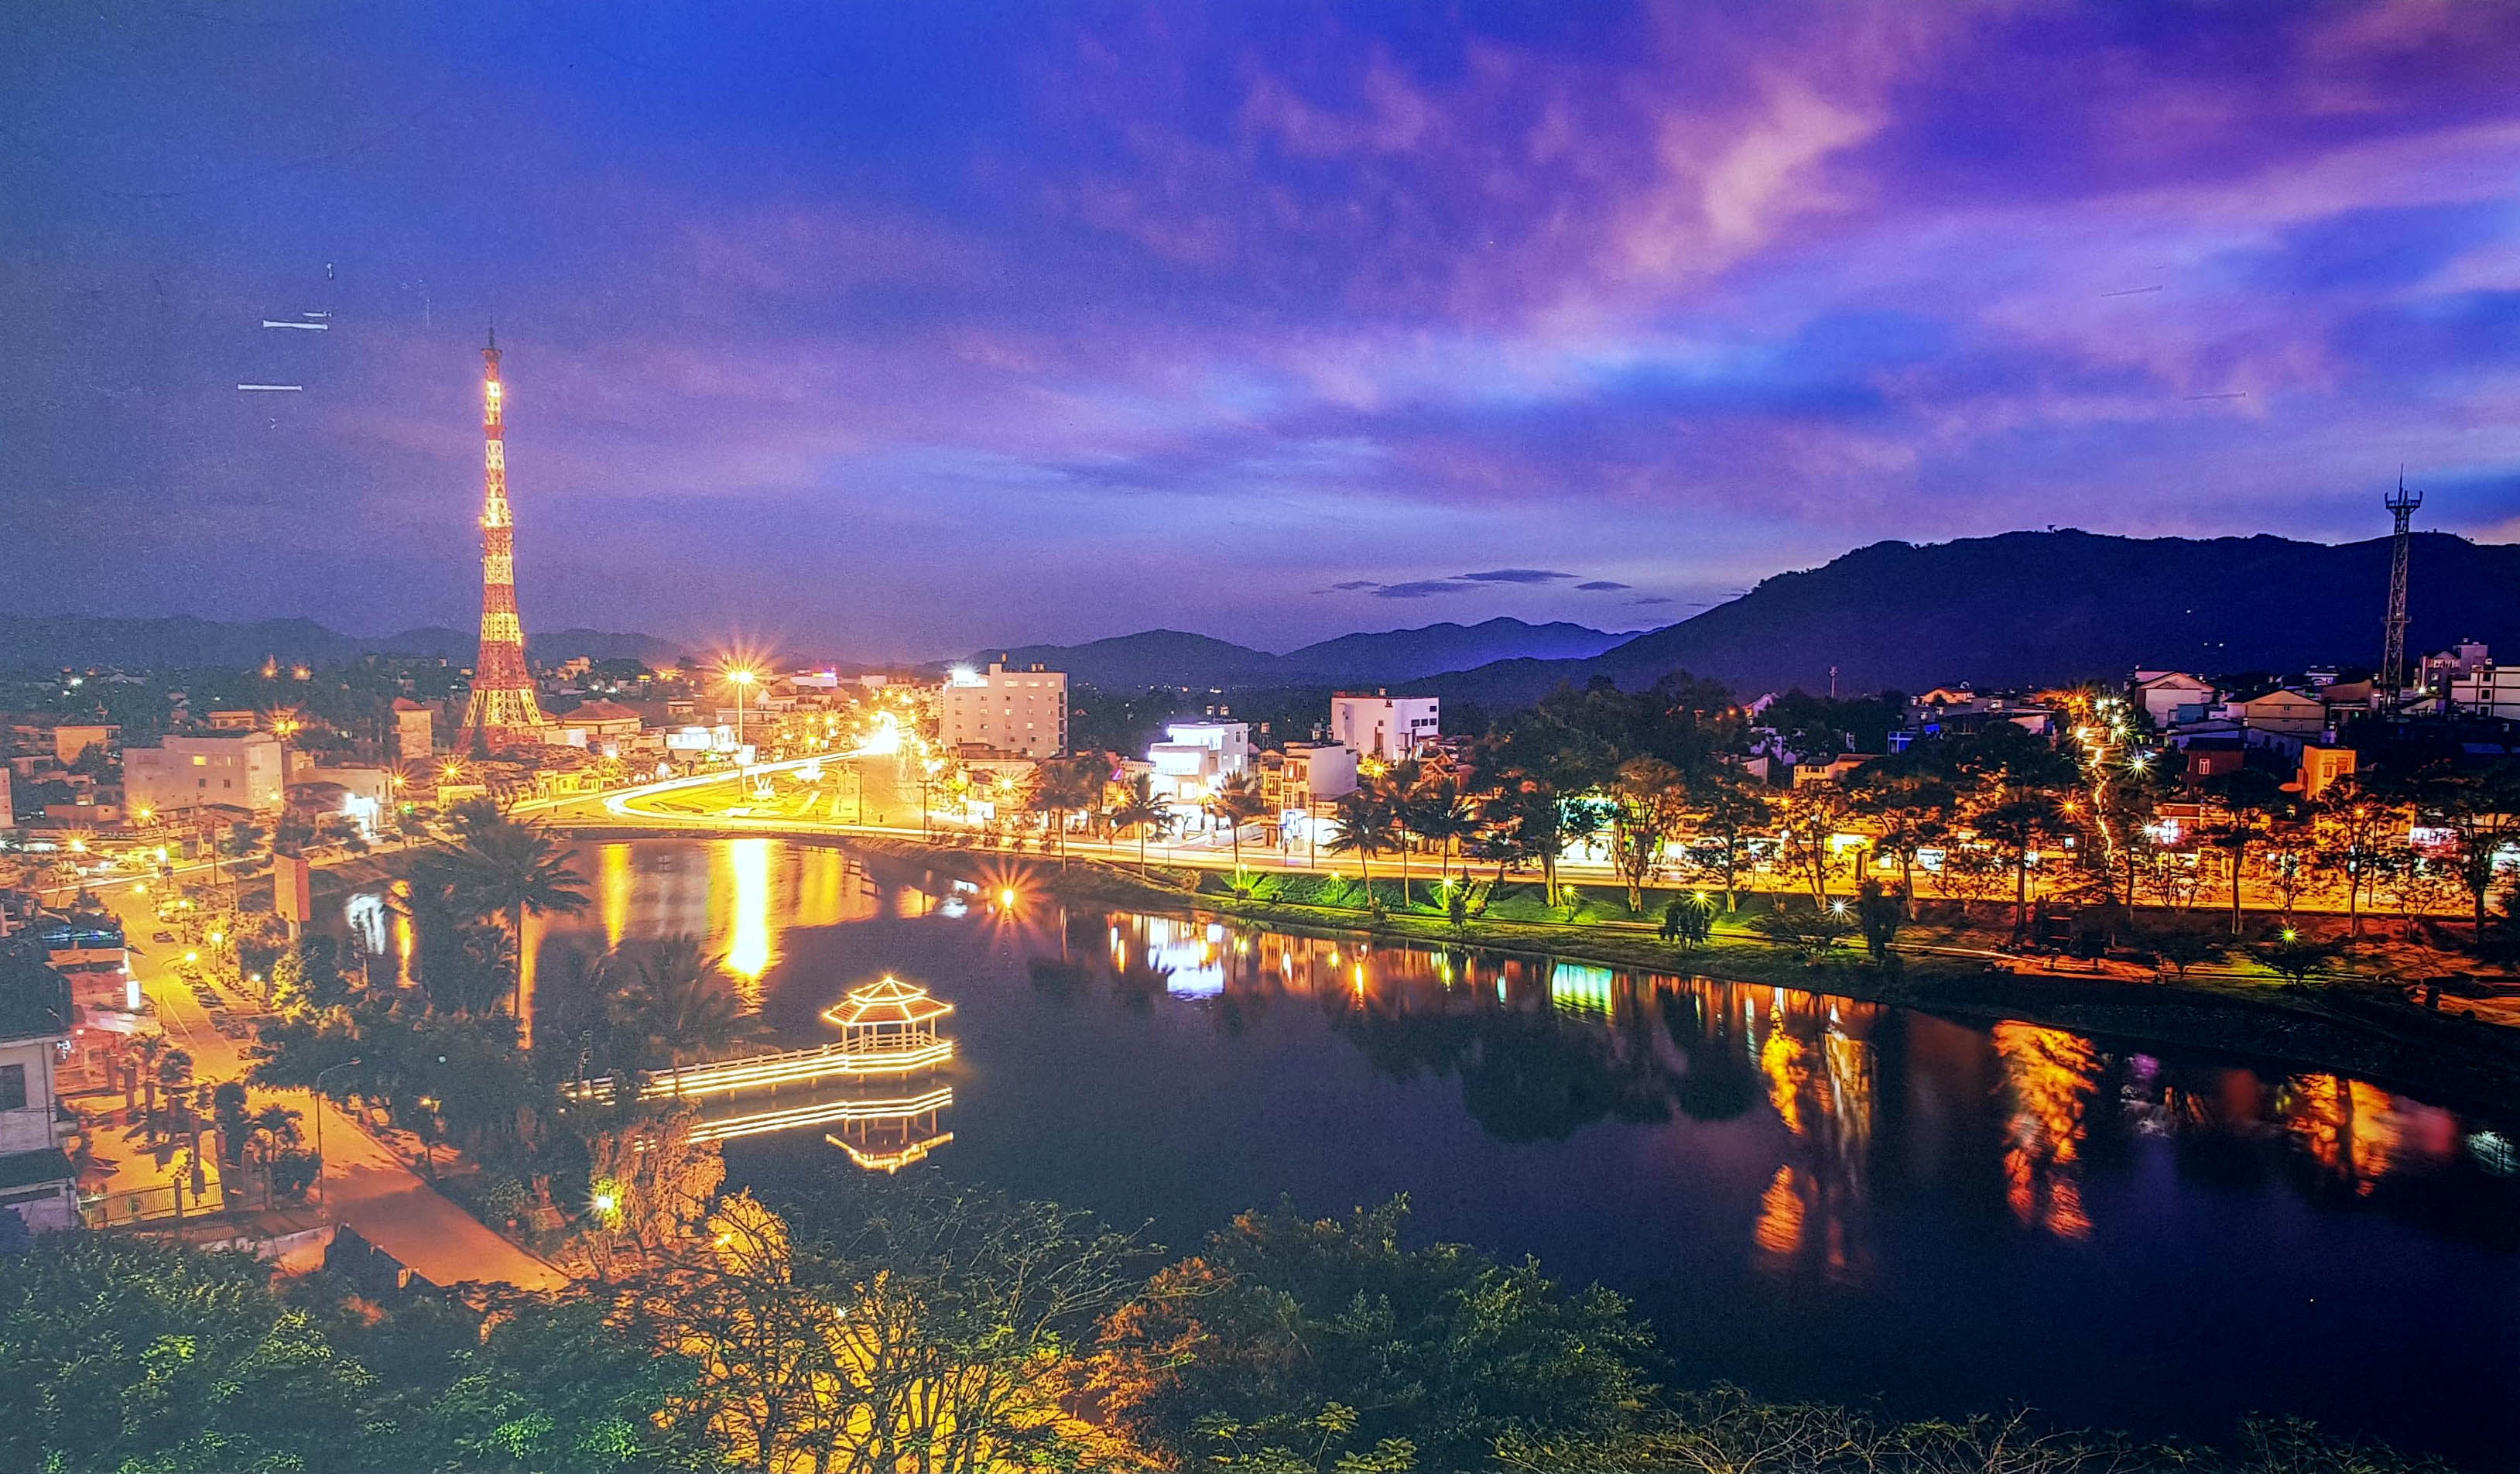 Bảo Lộc là một thành phố quyến rũ thuộc tỉnh Lâm Đồng, với những công trình kiến trúc độc đáo và cảnh quan thiên nhiên hùng vĩ. Xem hình ảnh liên quan để cảm nhận sự yên bình của những ngôi chùa, vẻ đẹp của những thác nước và những đồi chè ngát hương.